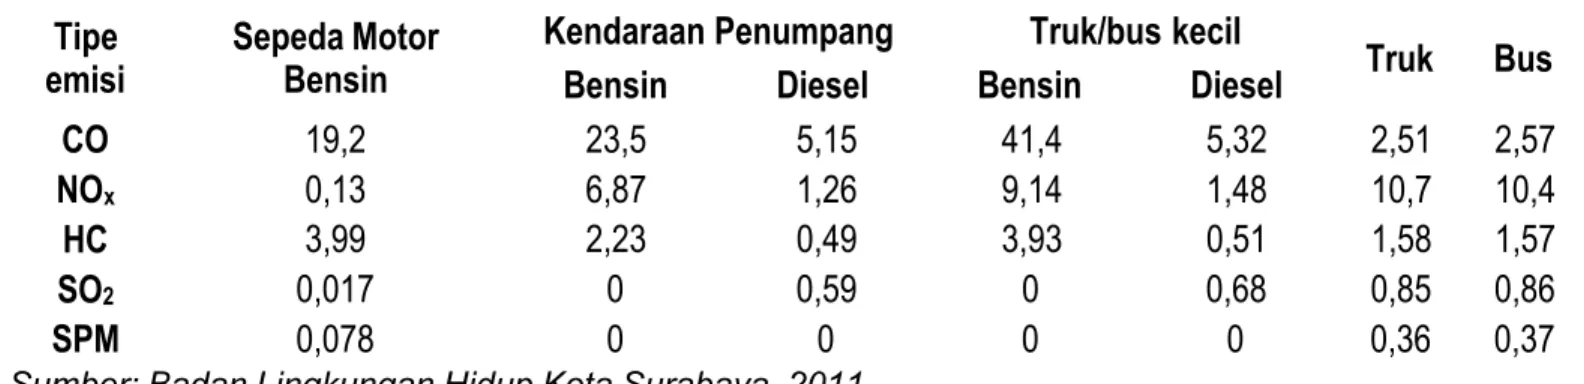 Tabel 2.1. Perkiraan Emisi CO 2 dan Konsumsi Energi Menurut Sektor Pengguna Tipe